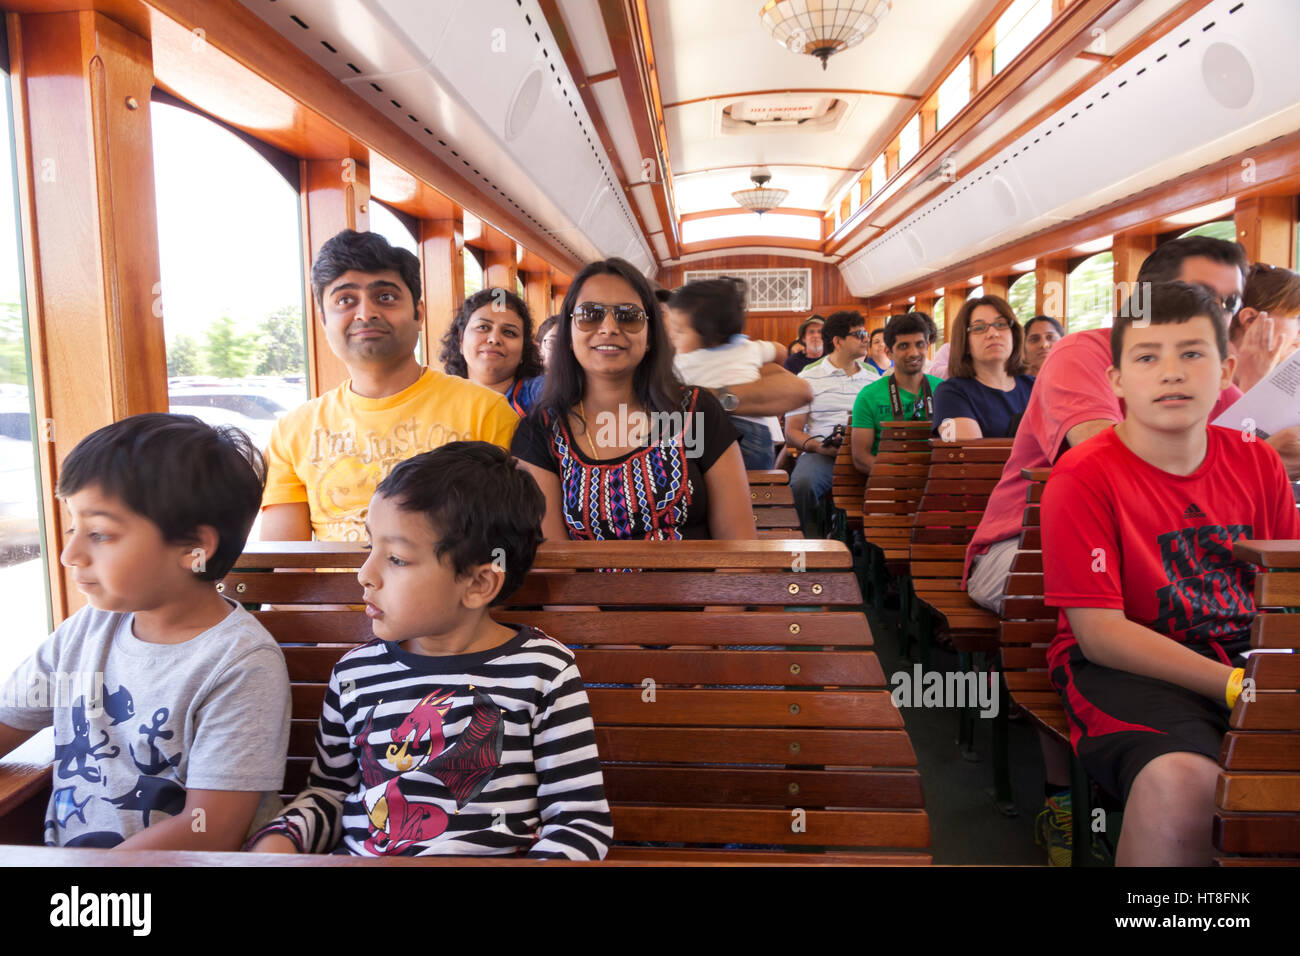 Les touristes à bord d'un Hershey Park, New York tour bus. Banque D'Images